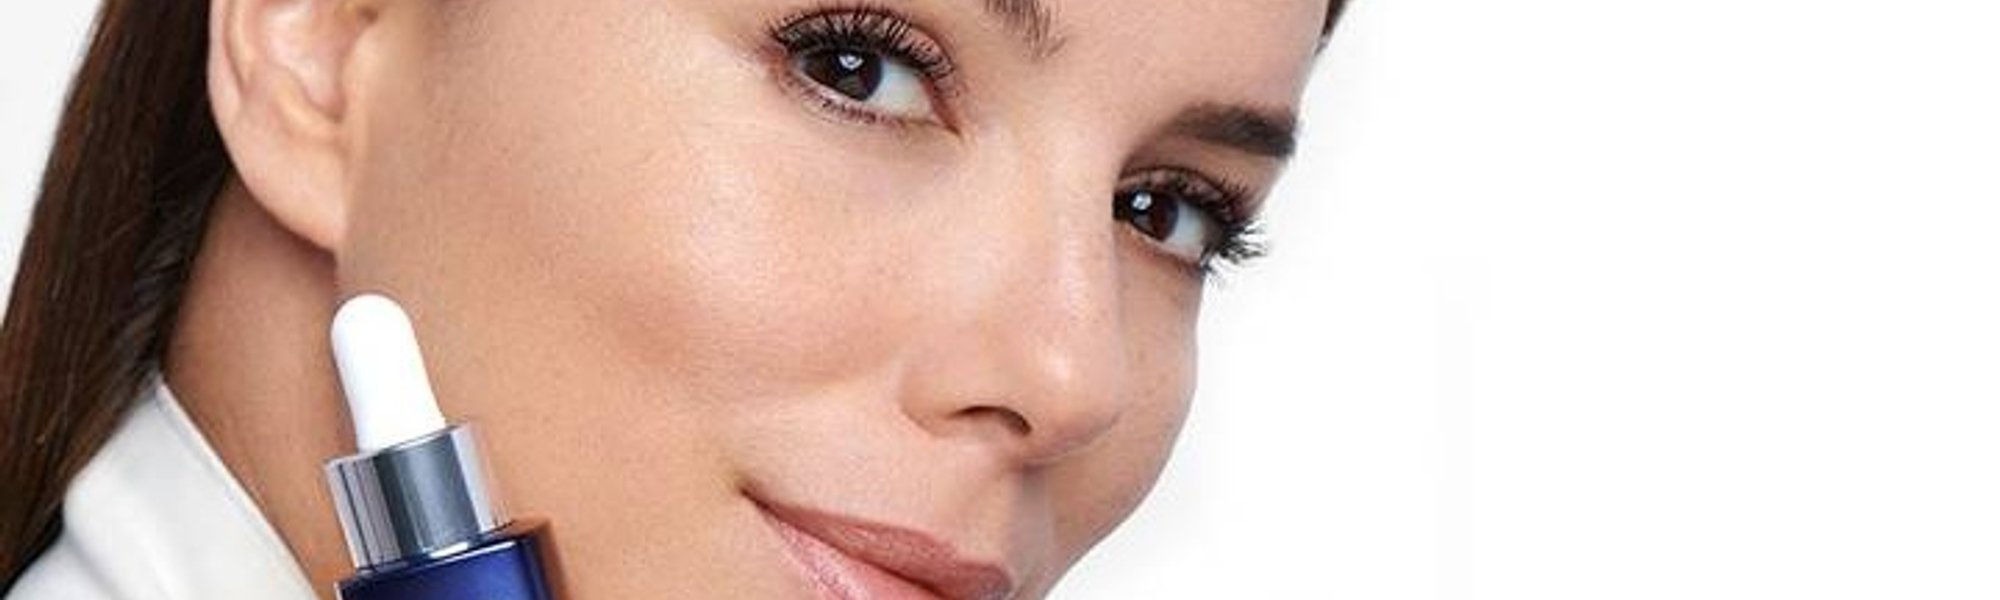 Cómo hacer un masaje facial antiarrugas | L’Oréal Paris